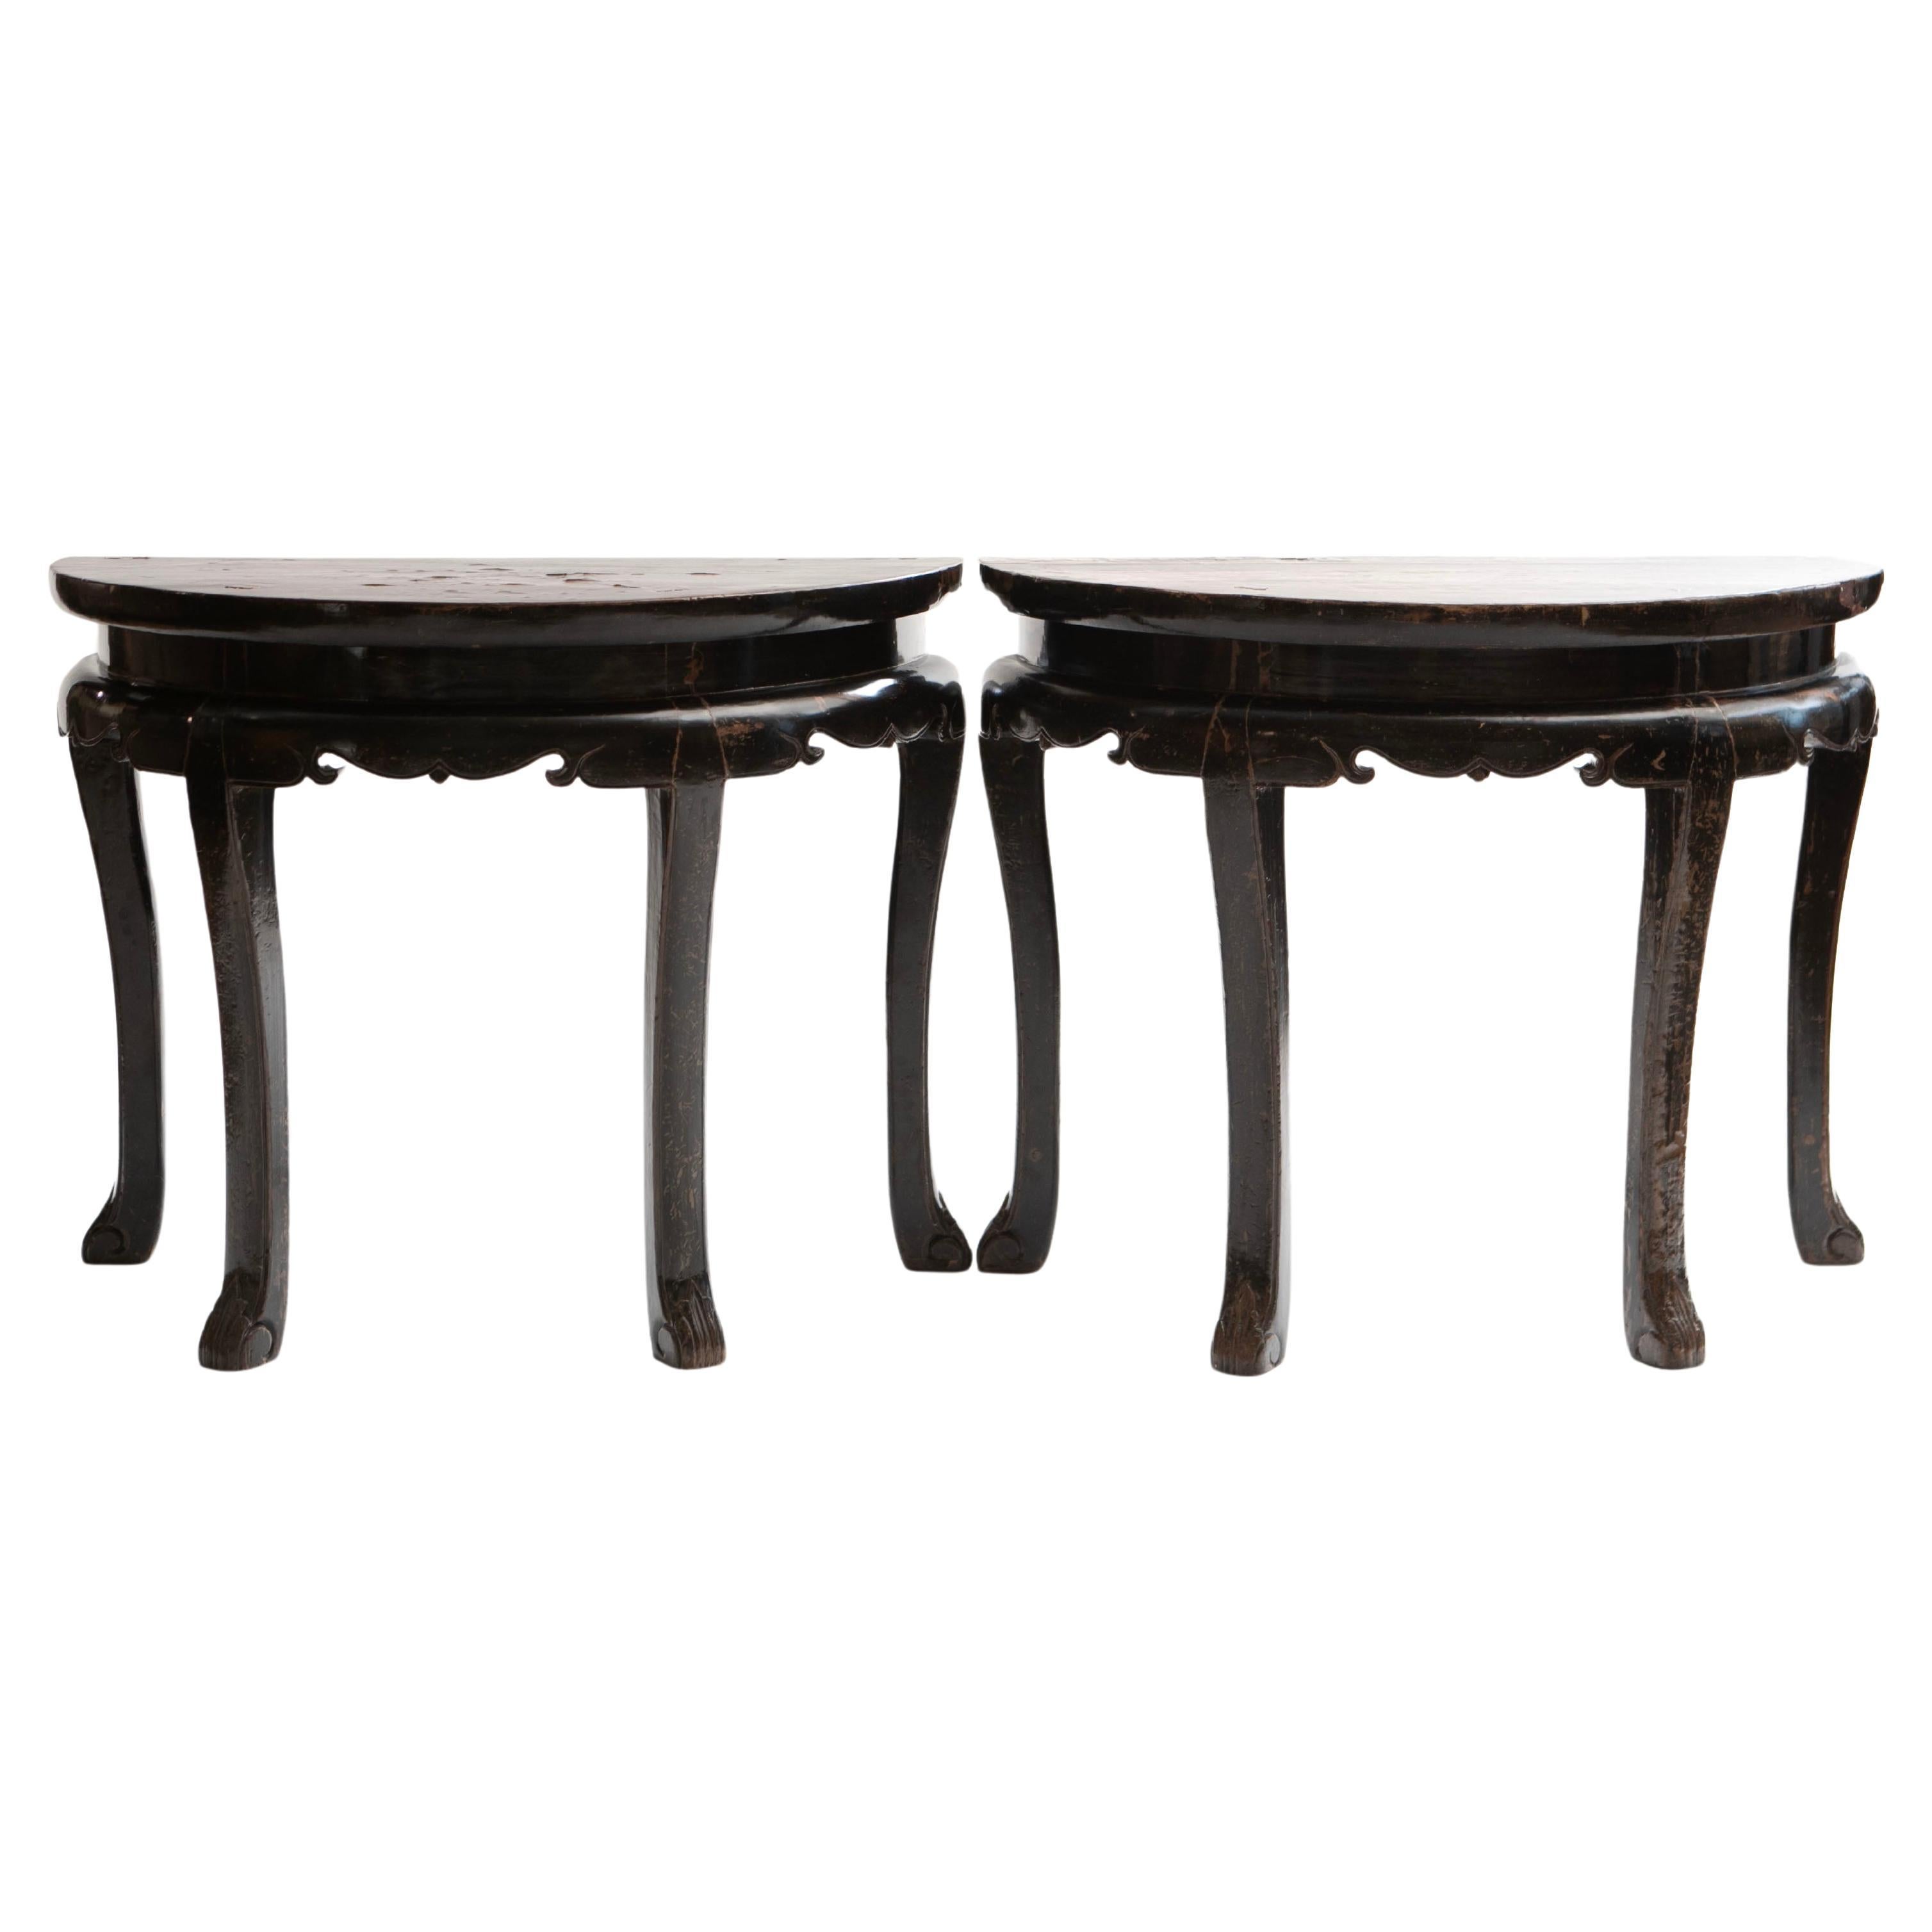 Paire de tables consoles laquées Demilune de la dynastie Qing ou table centrale